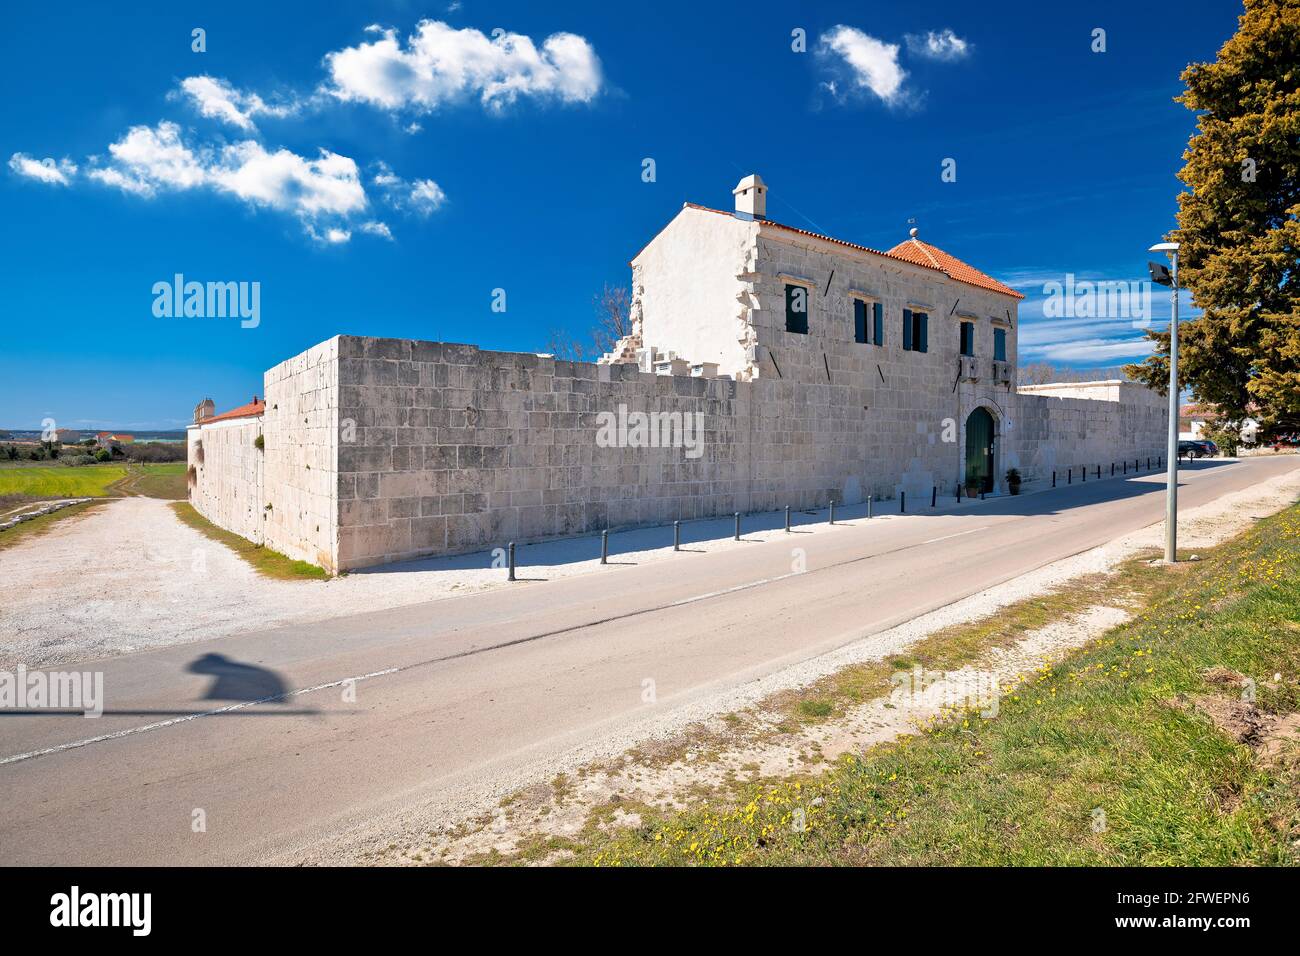 Maskovica Han historische osmanische Architektur in Vrana Dorf, Dalmatien Region von Kroatien Stockfoto